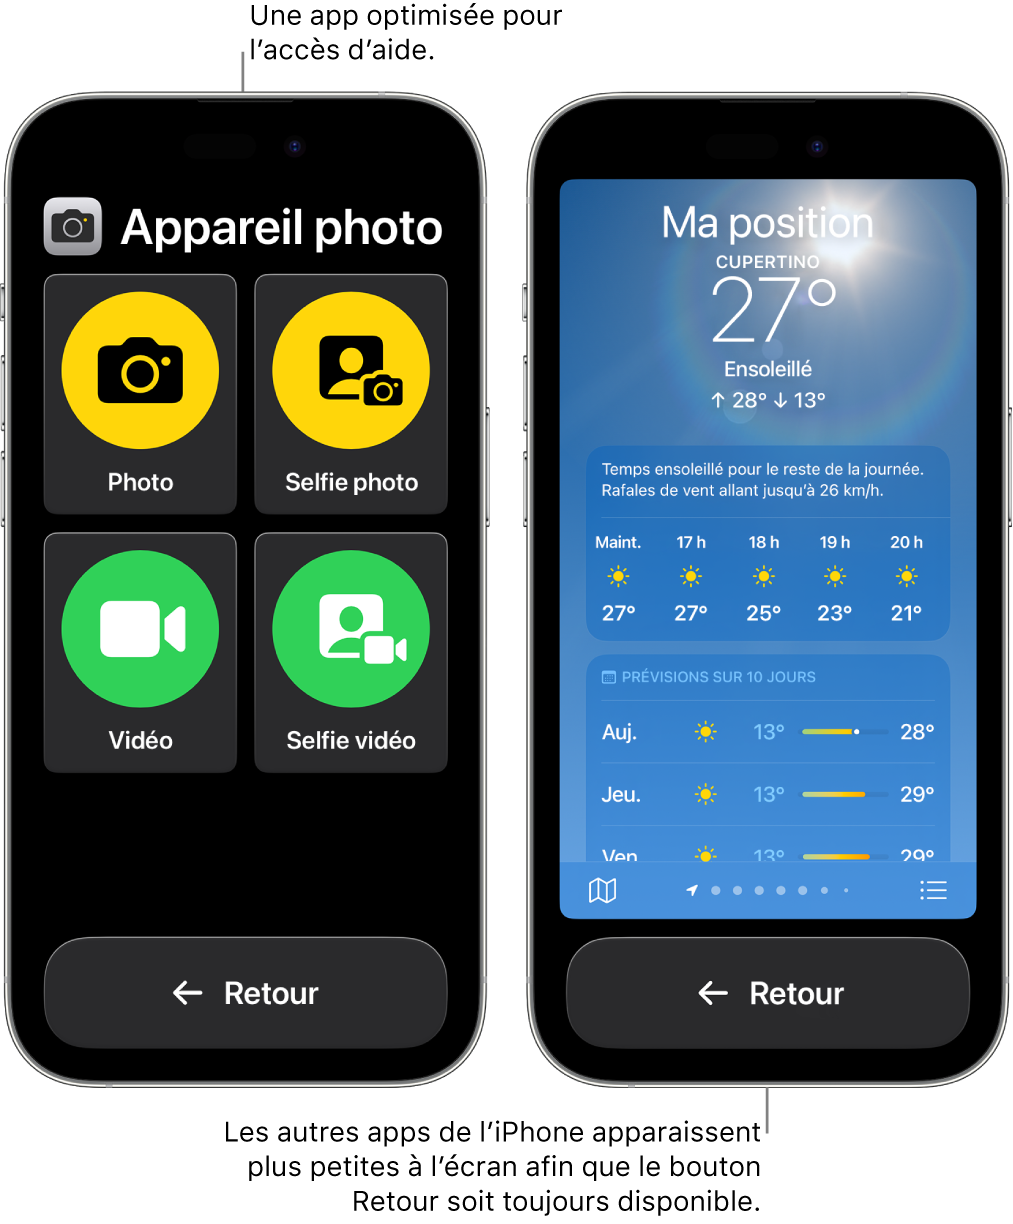 Deux iPhone dans Accès d’aide. L’un des iPhone affiche une app conçue pour Accès d’aide avec une grande grille composée de boutons. L’autre iPhone affiche une app qui n’est pas conçue pour Accès d’aide et se présente dans son format original. L’app est plus petite à l’écran, avec un gros bouton Retour en bas.